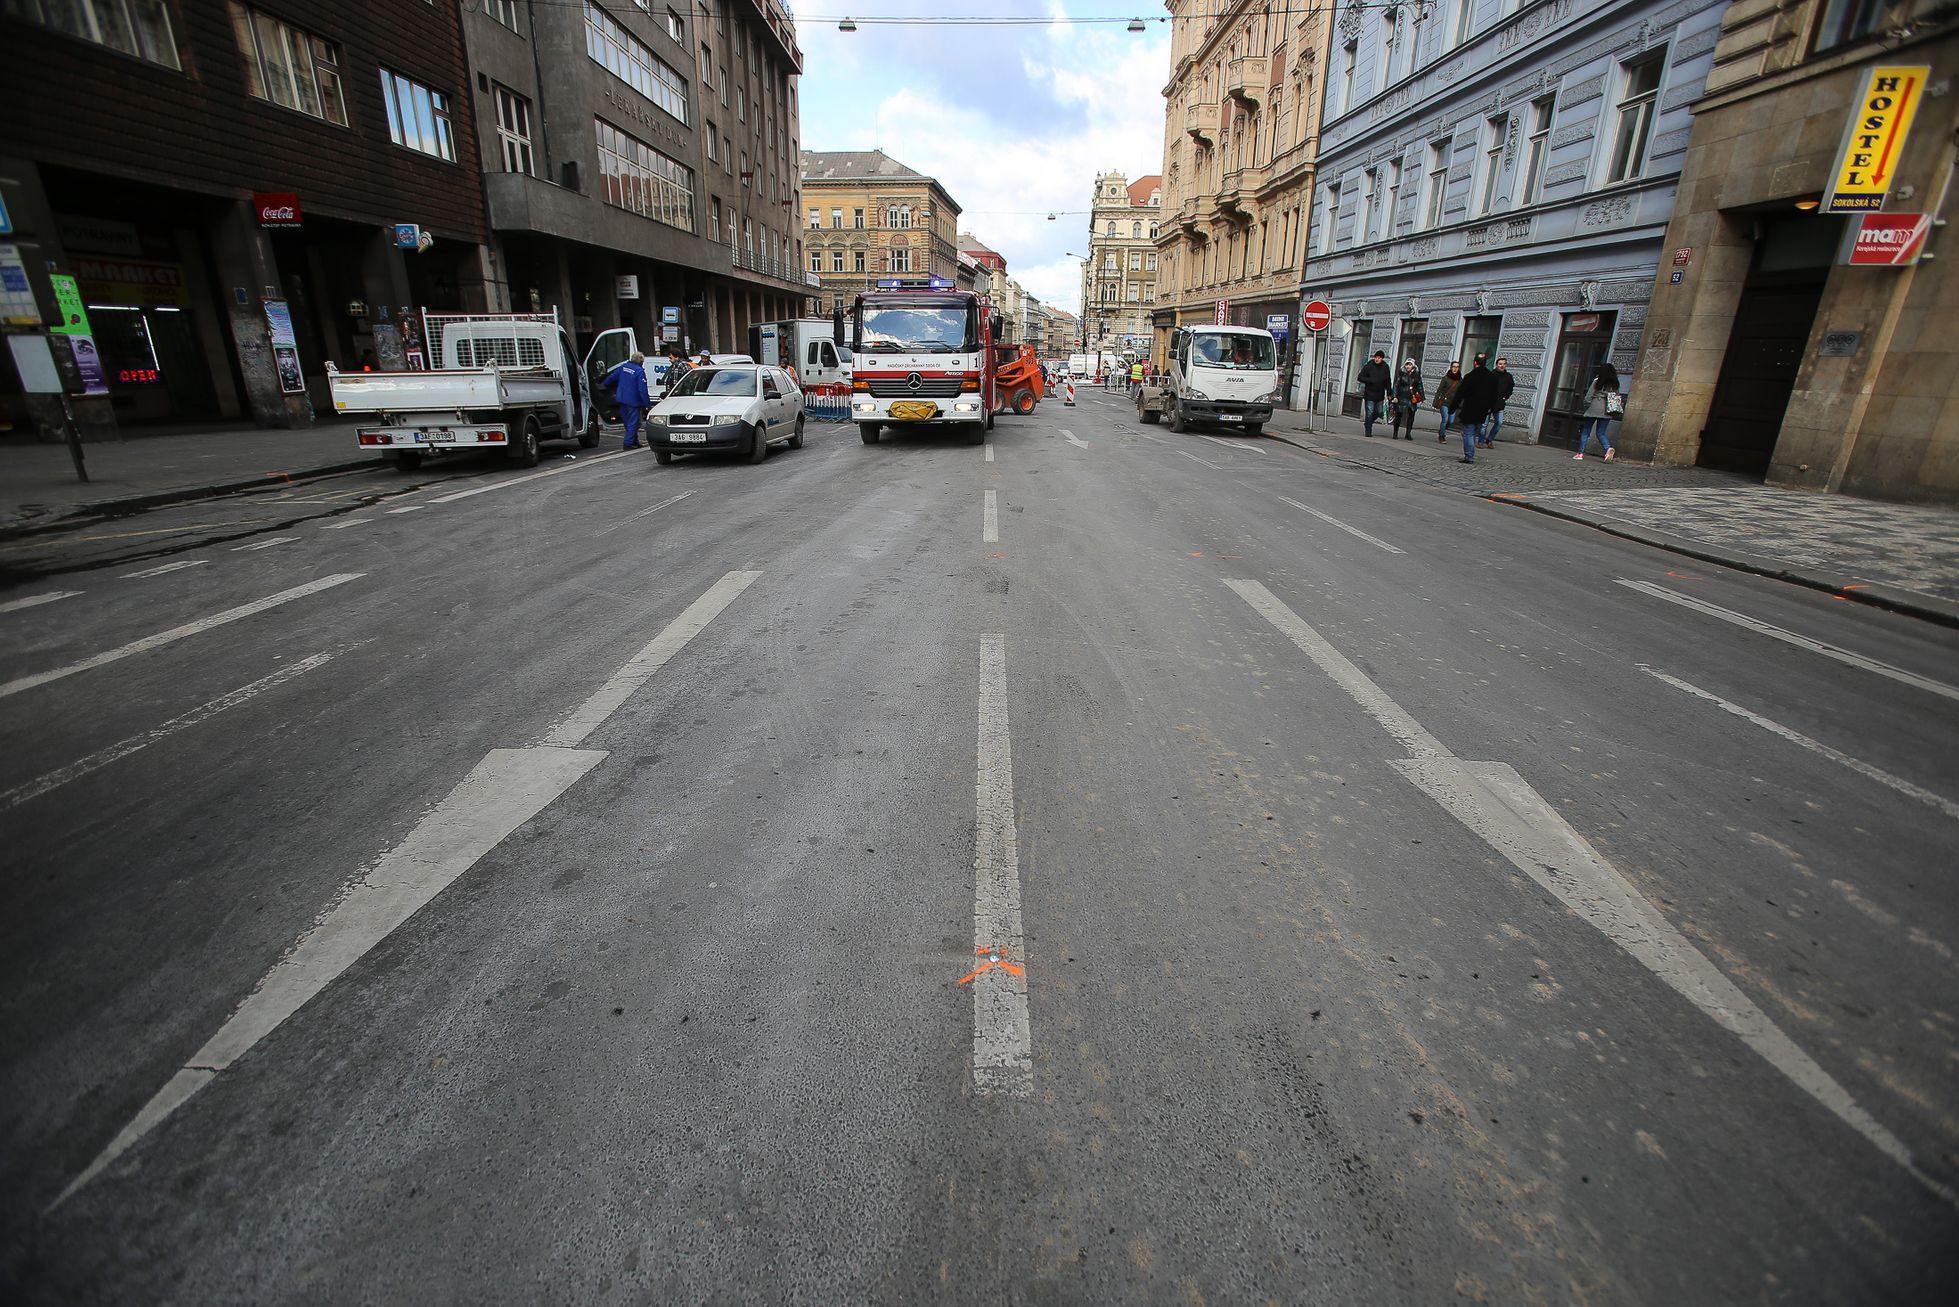 Kolaps dopravy v Praze - zeditované fotky